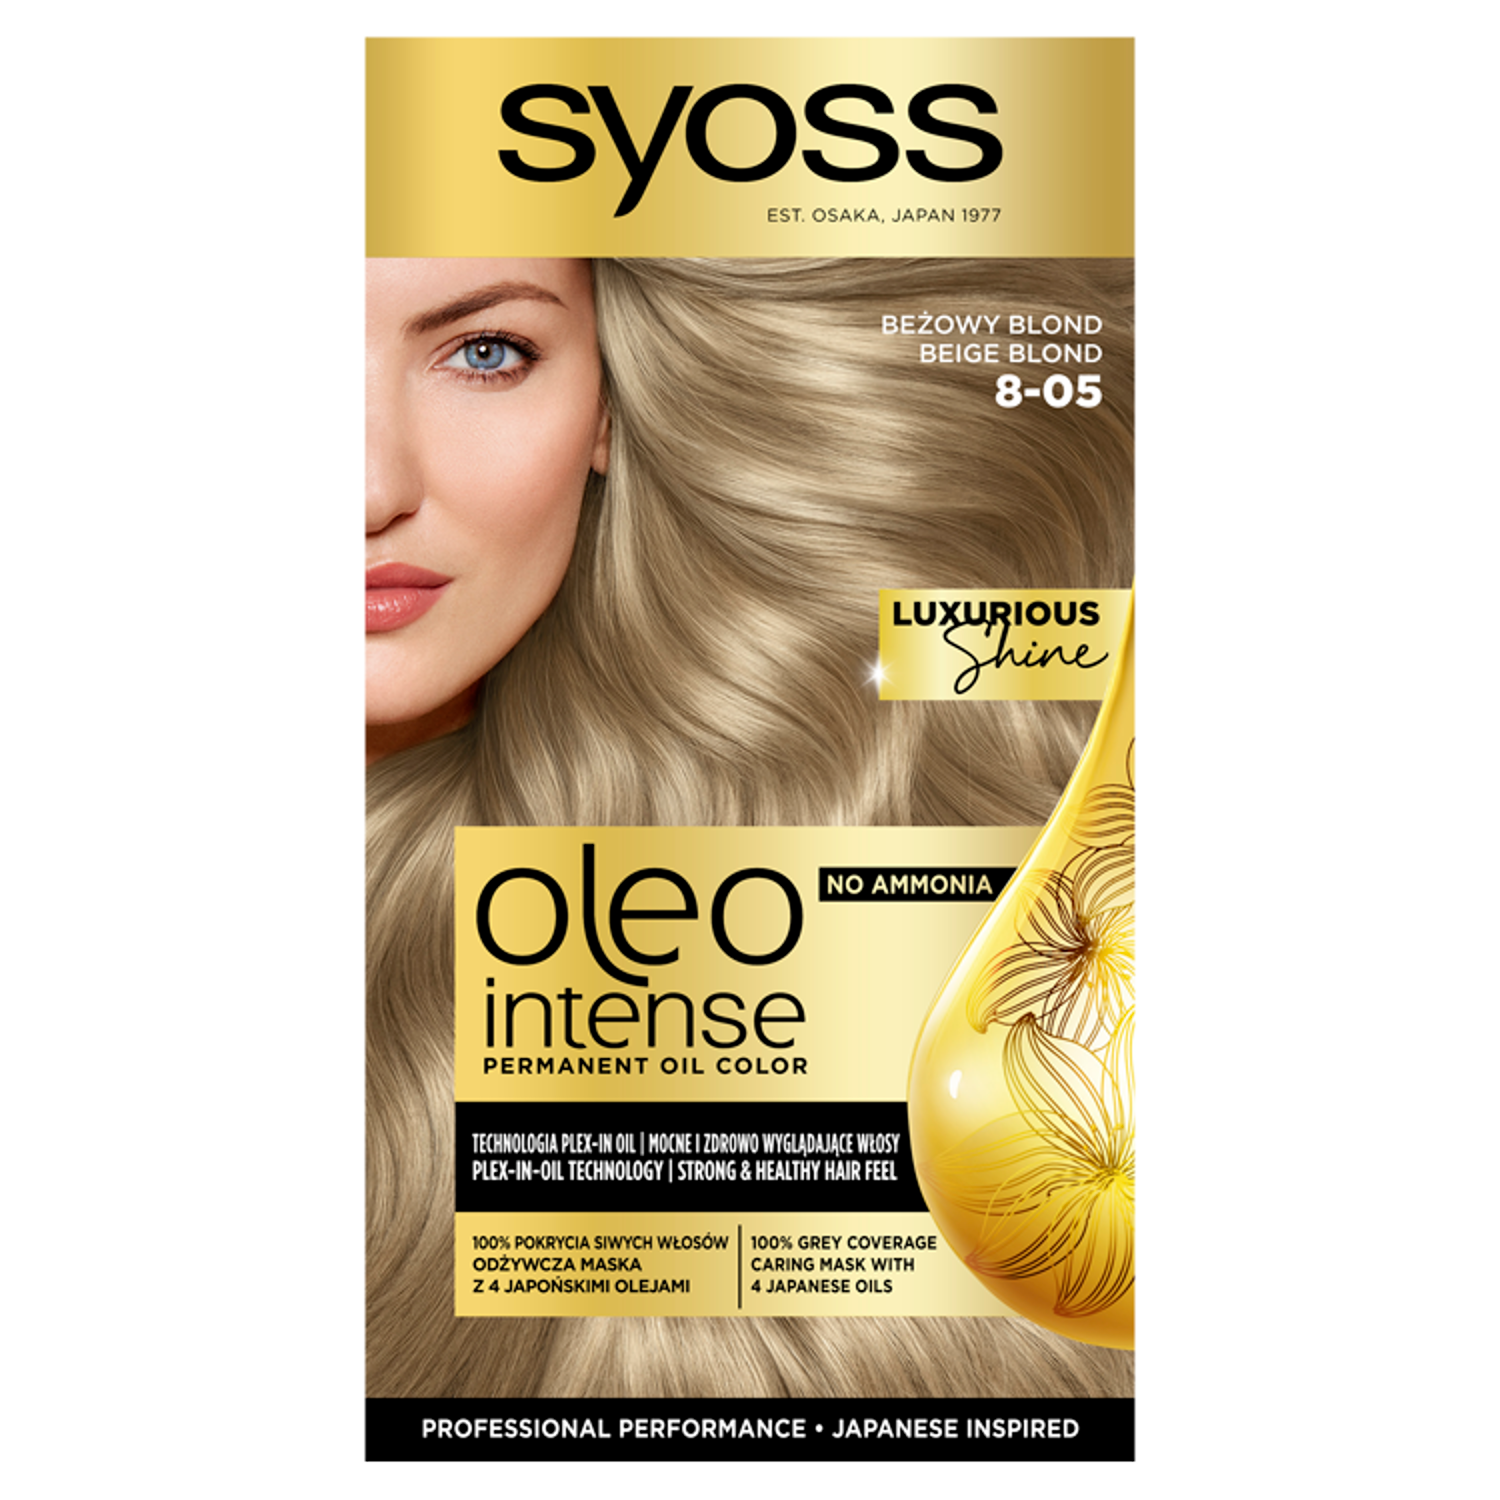 Syoss Oleo Intense farba do włosów 8-05 beżowy blond, 1 opak. | hebe.pl